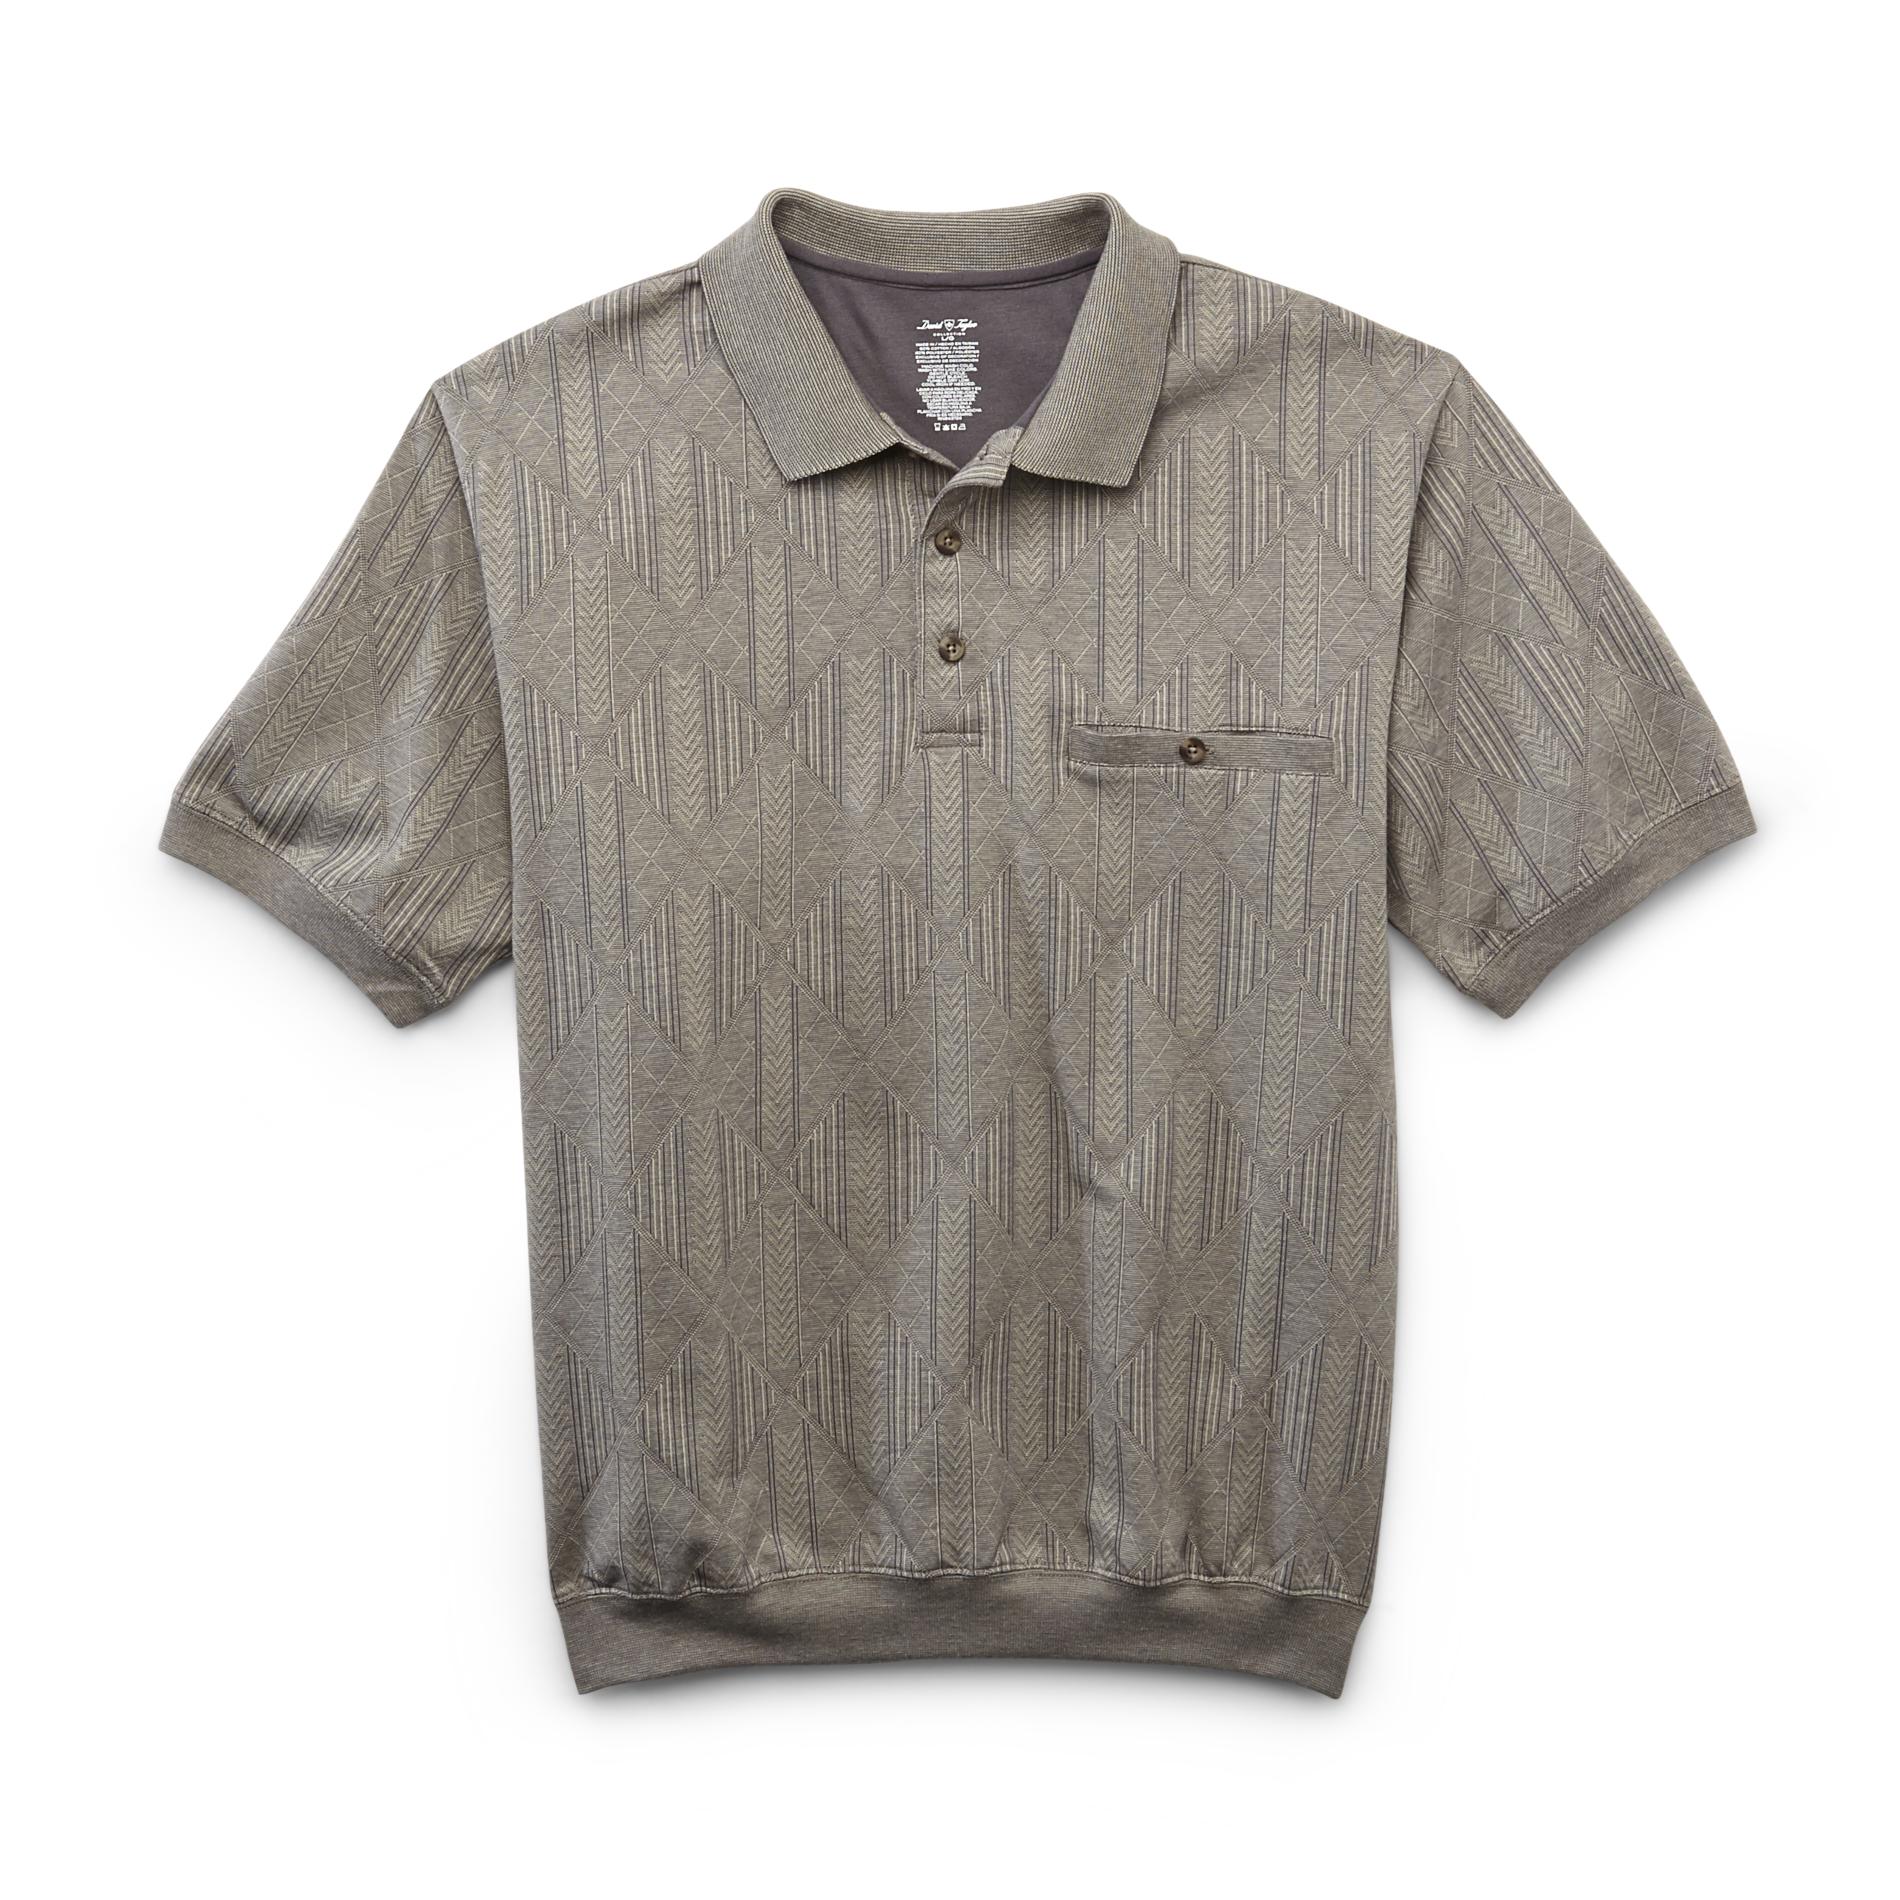 David Taylor Collection Men's Jacquard Knit Polo Shirt - Diamond Pattern & Chevron